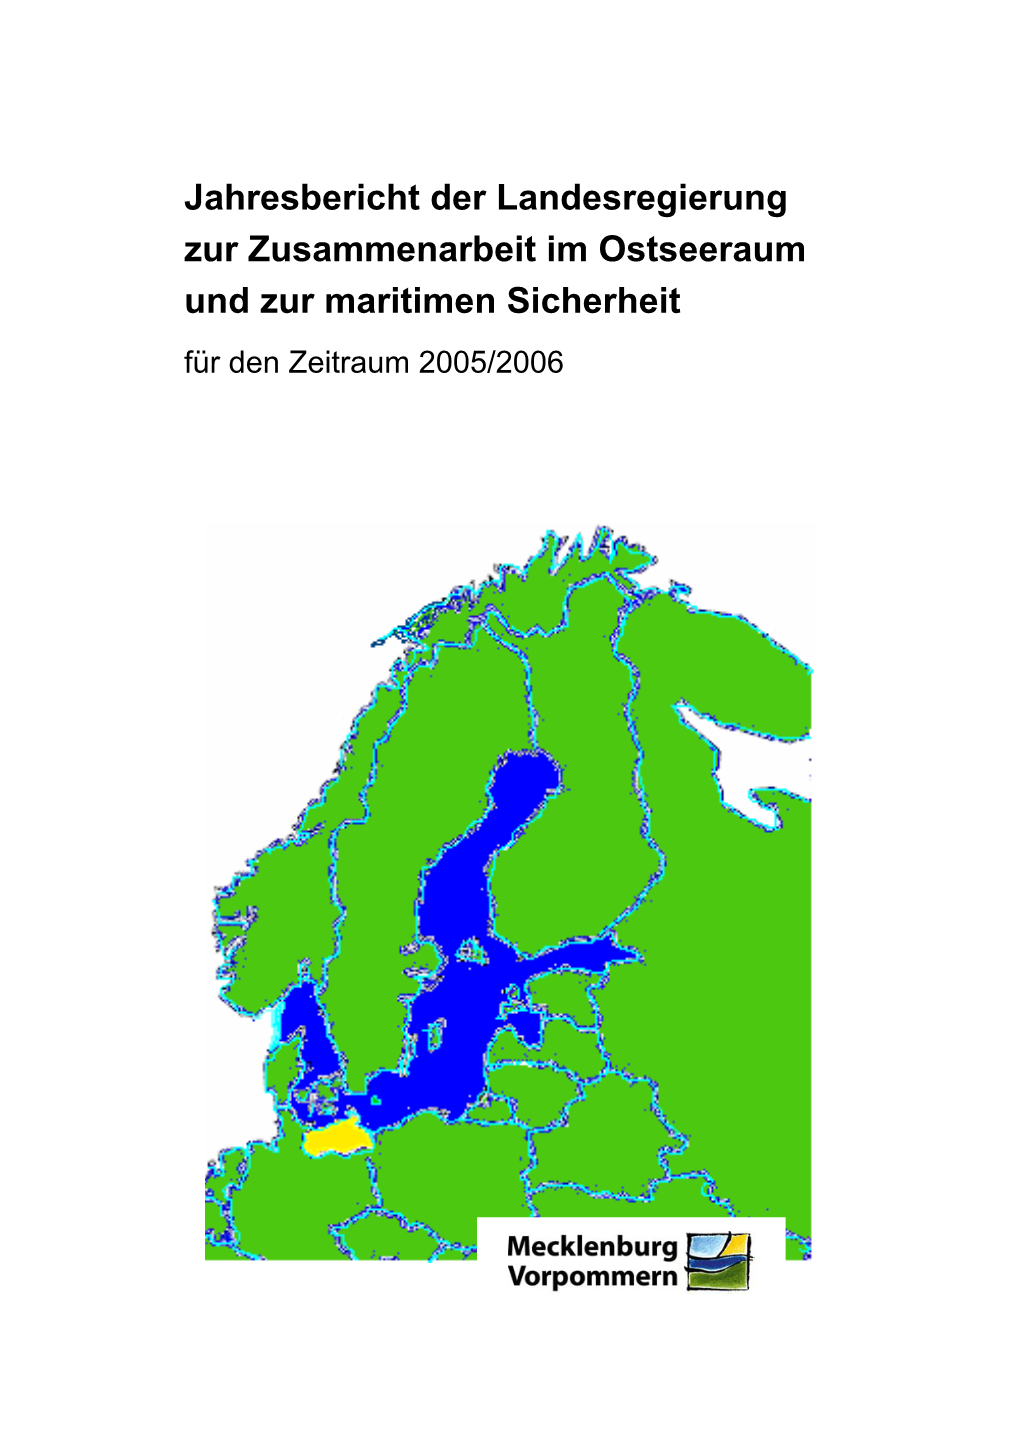 Jahresbericht Der Landesregierung Zur Zusammenarbeit Im Ostseeraum Und Zur Maritimen Sicherheit Für Den Zeitraum 2005/2006